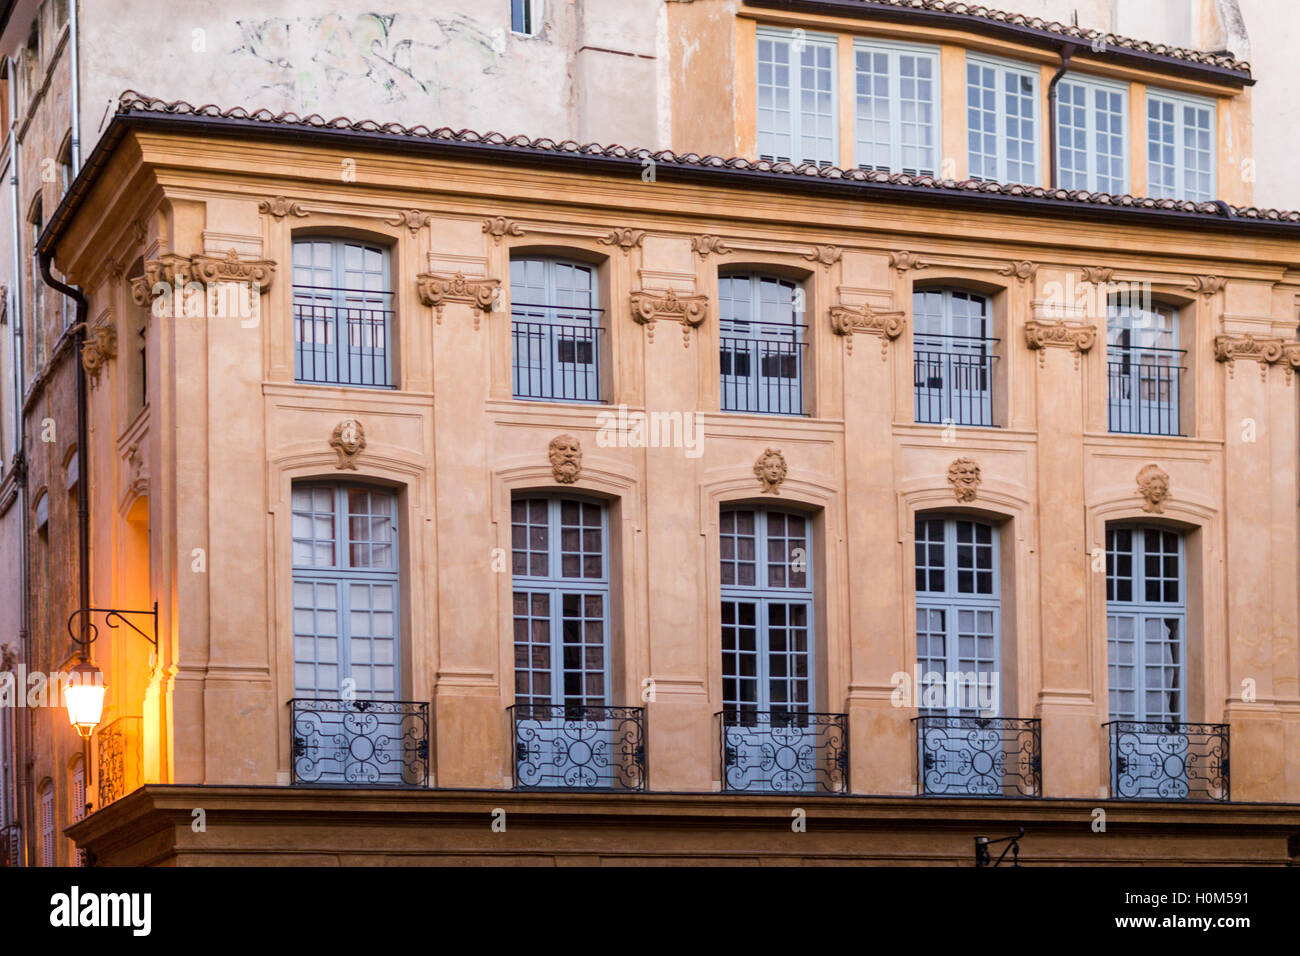 Provenzalische Gebäude und Architektur, Aix en Provence, Frankreich Stockfoto